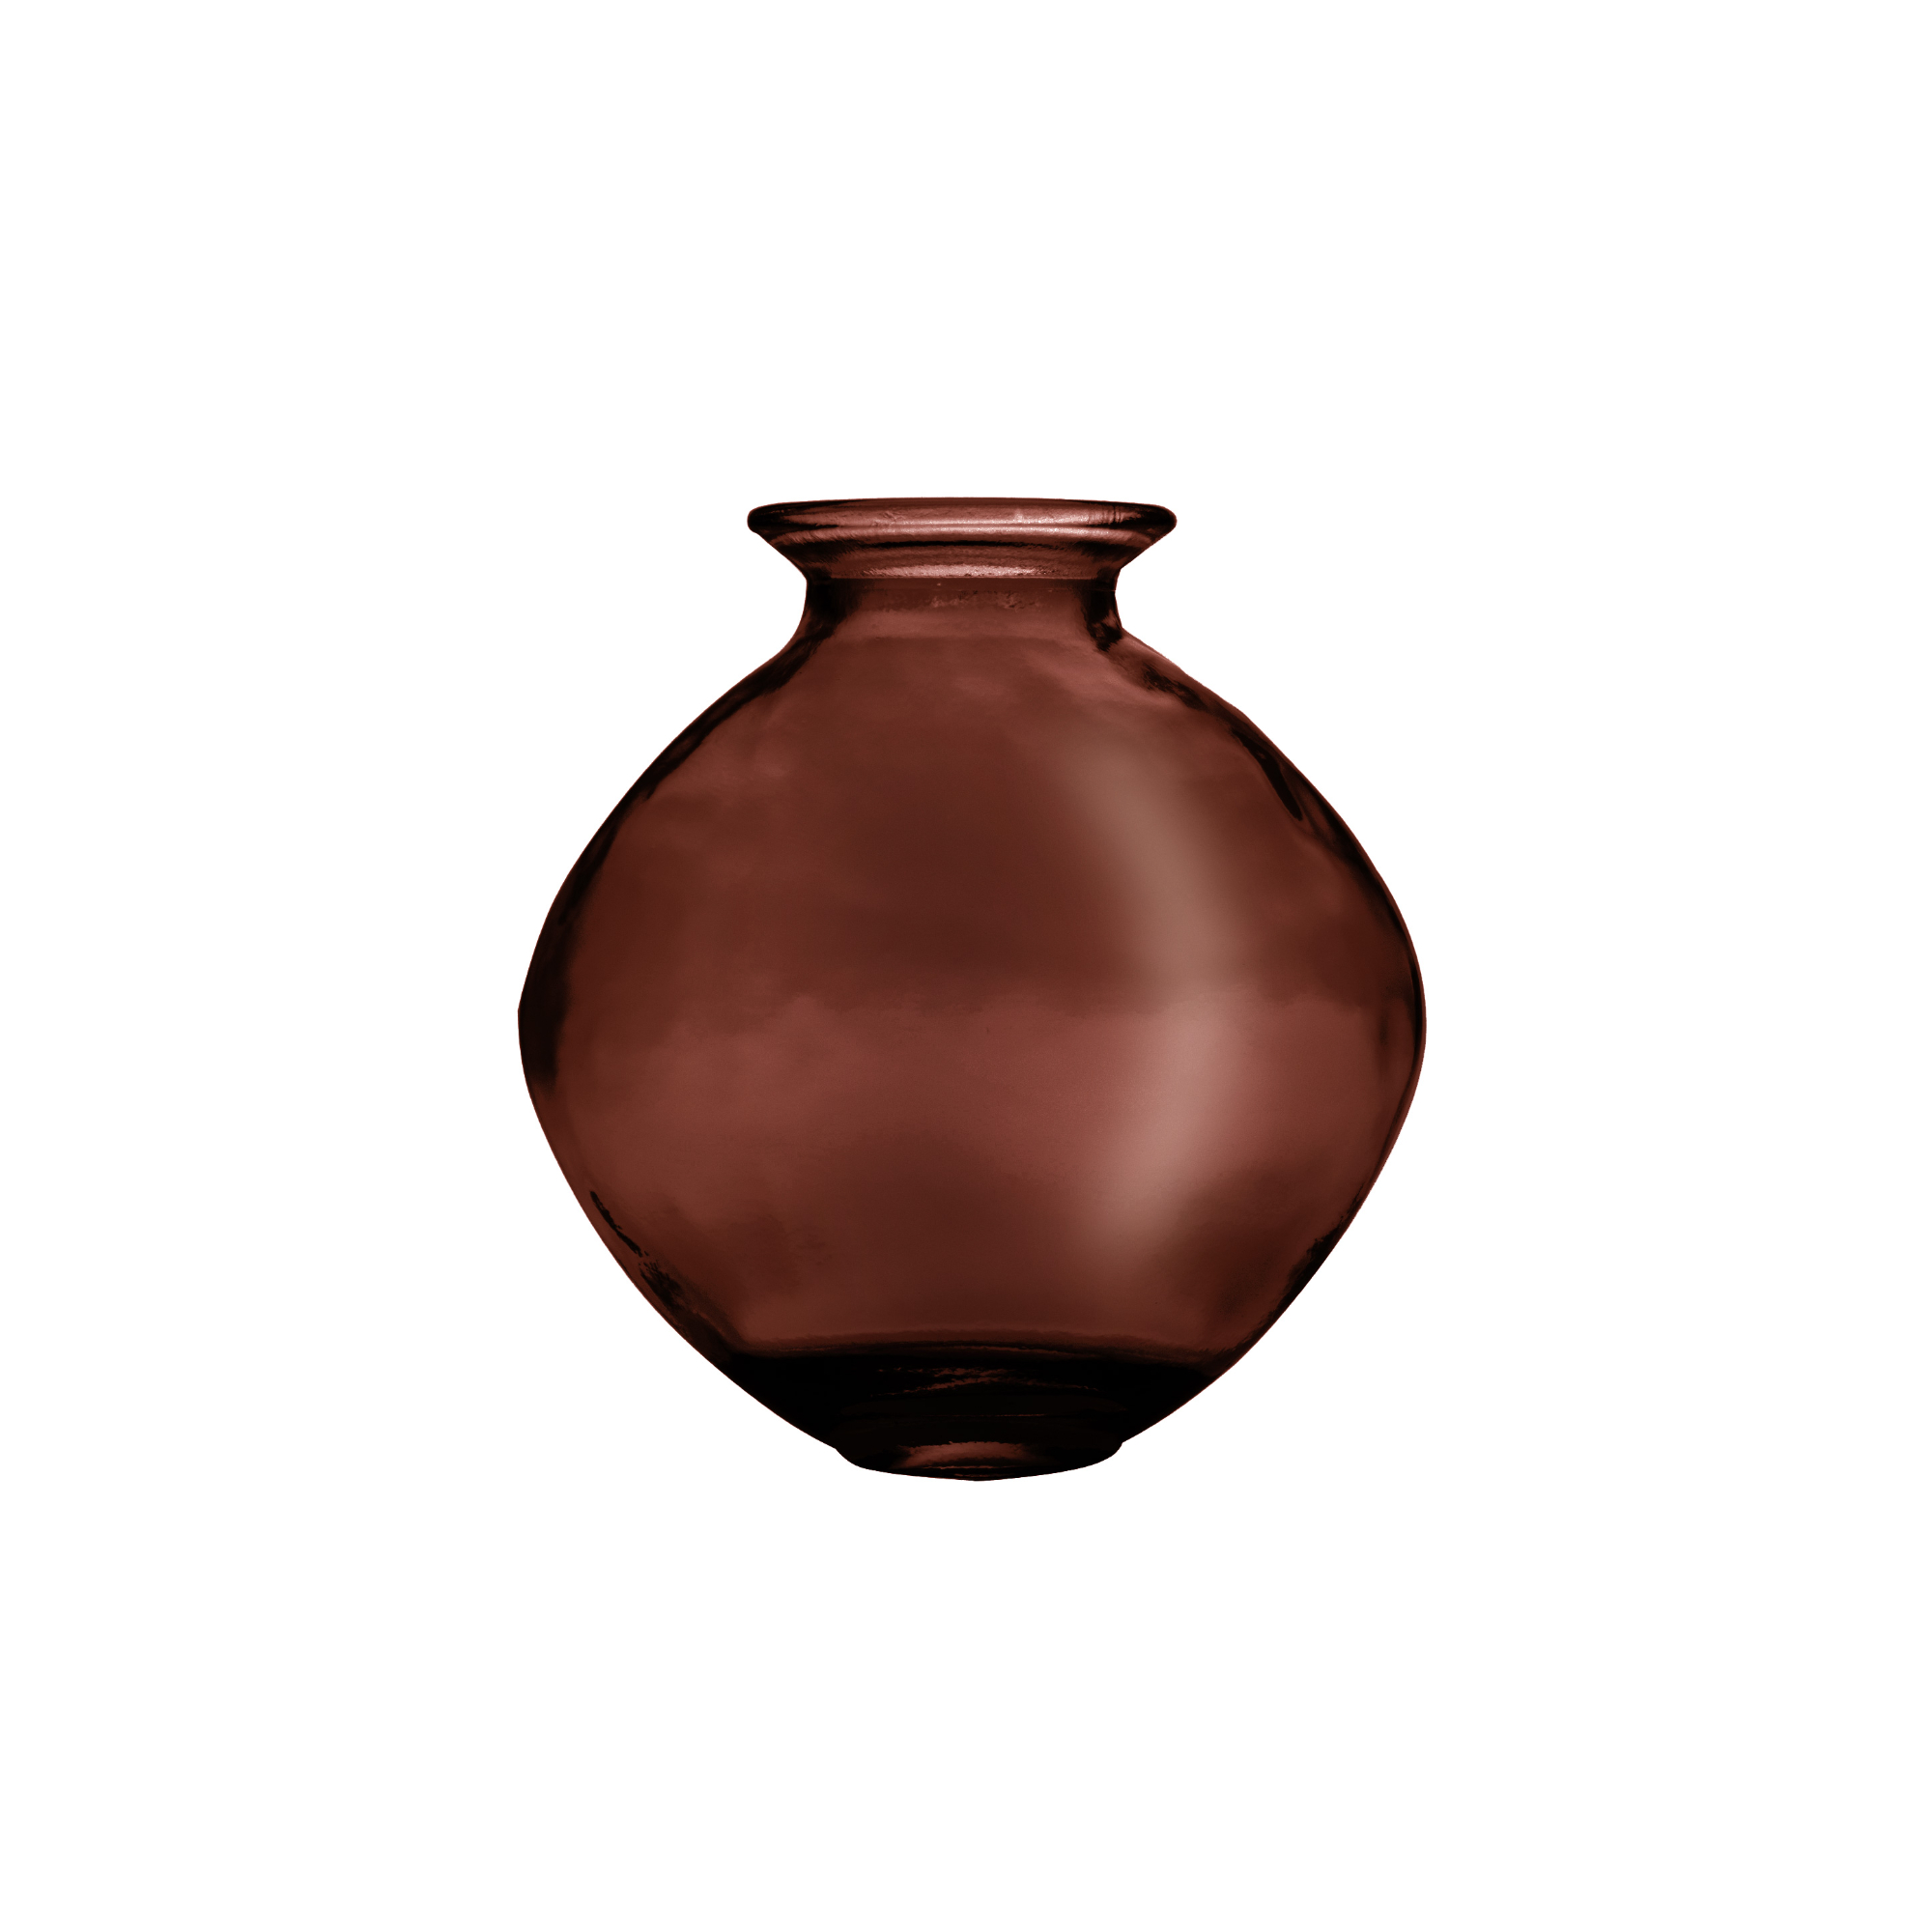 Ваза San miguel Neon темно-коричневый 26 см ваза san miguel merida темно коричневый 25 см